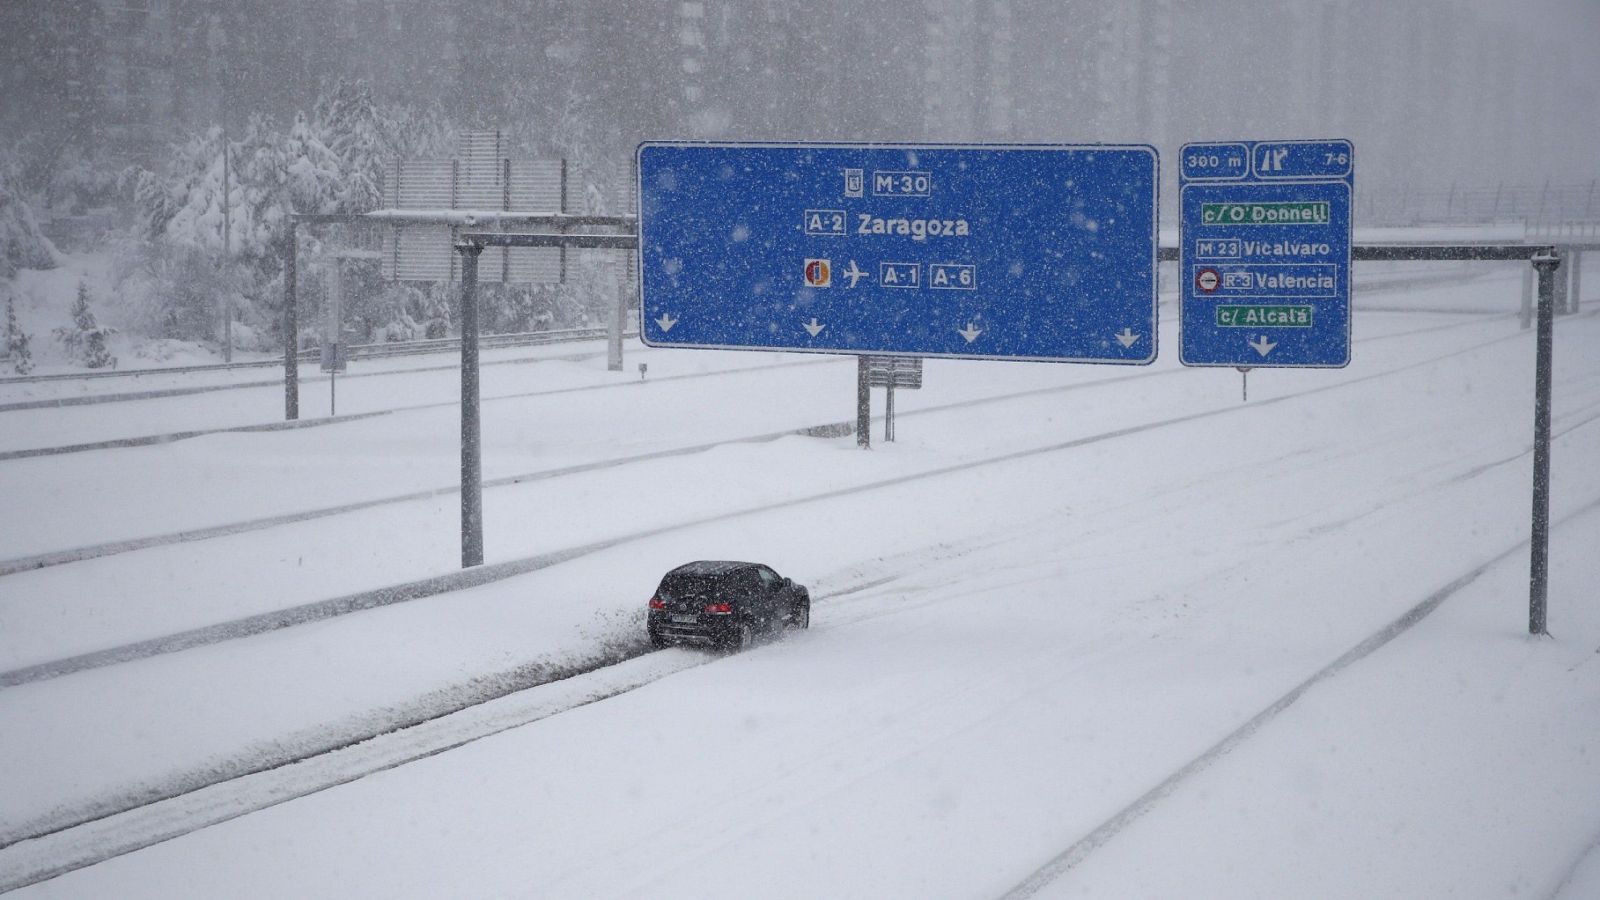 Atrapado por el temporal en Madrid: "El coche patinaba, había mucha nieve acumulada"